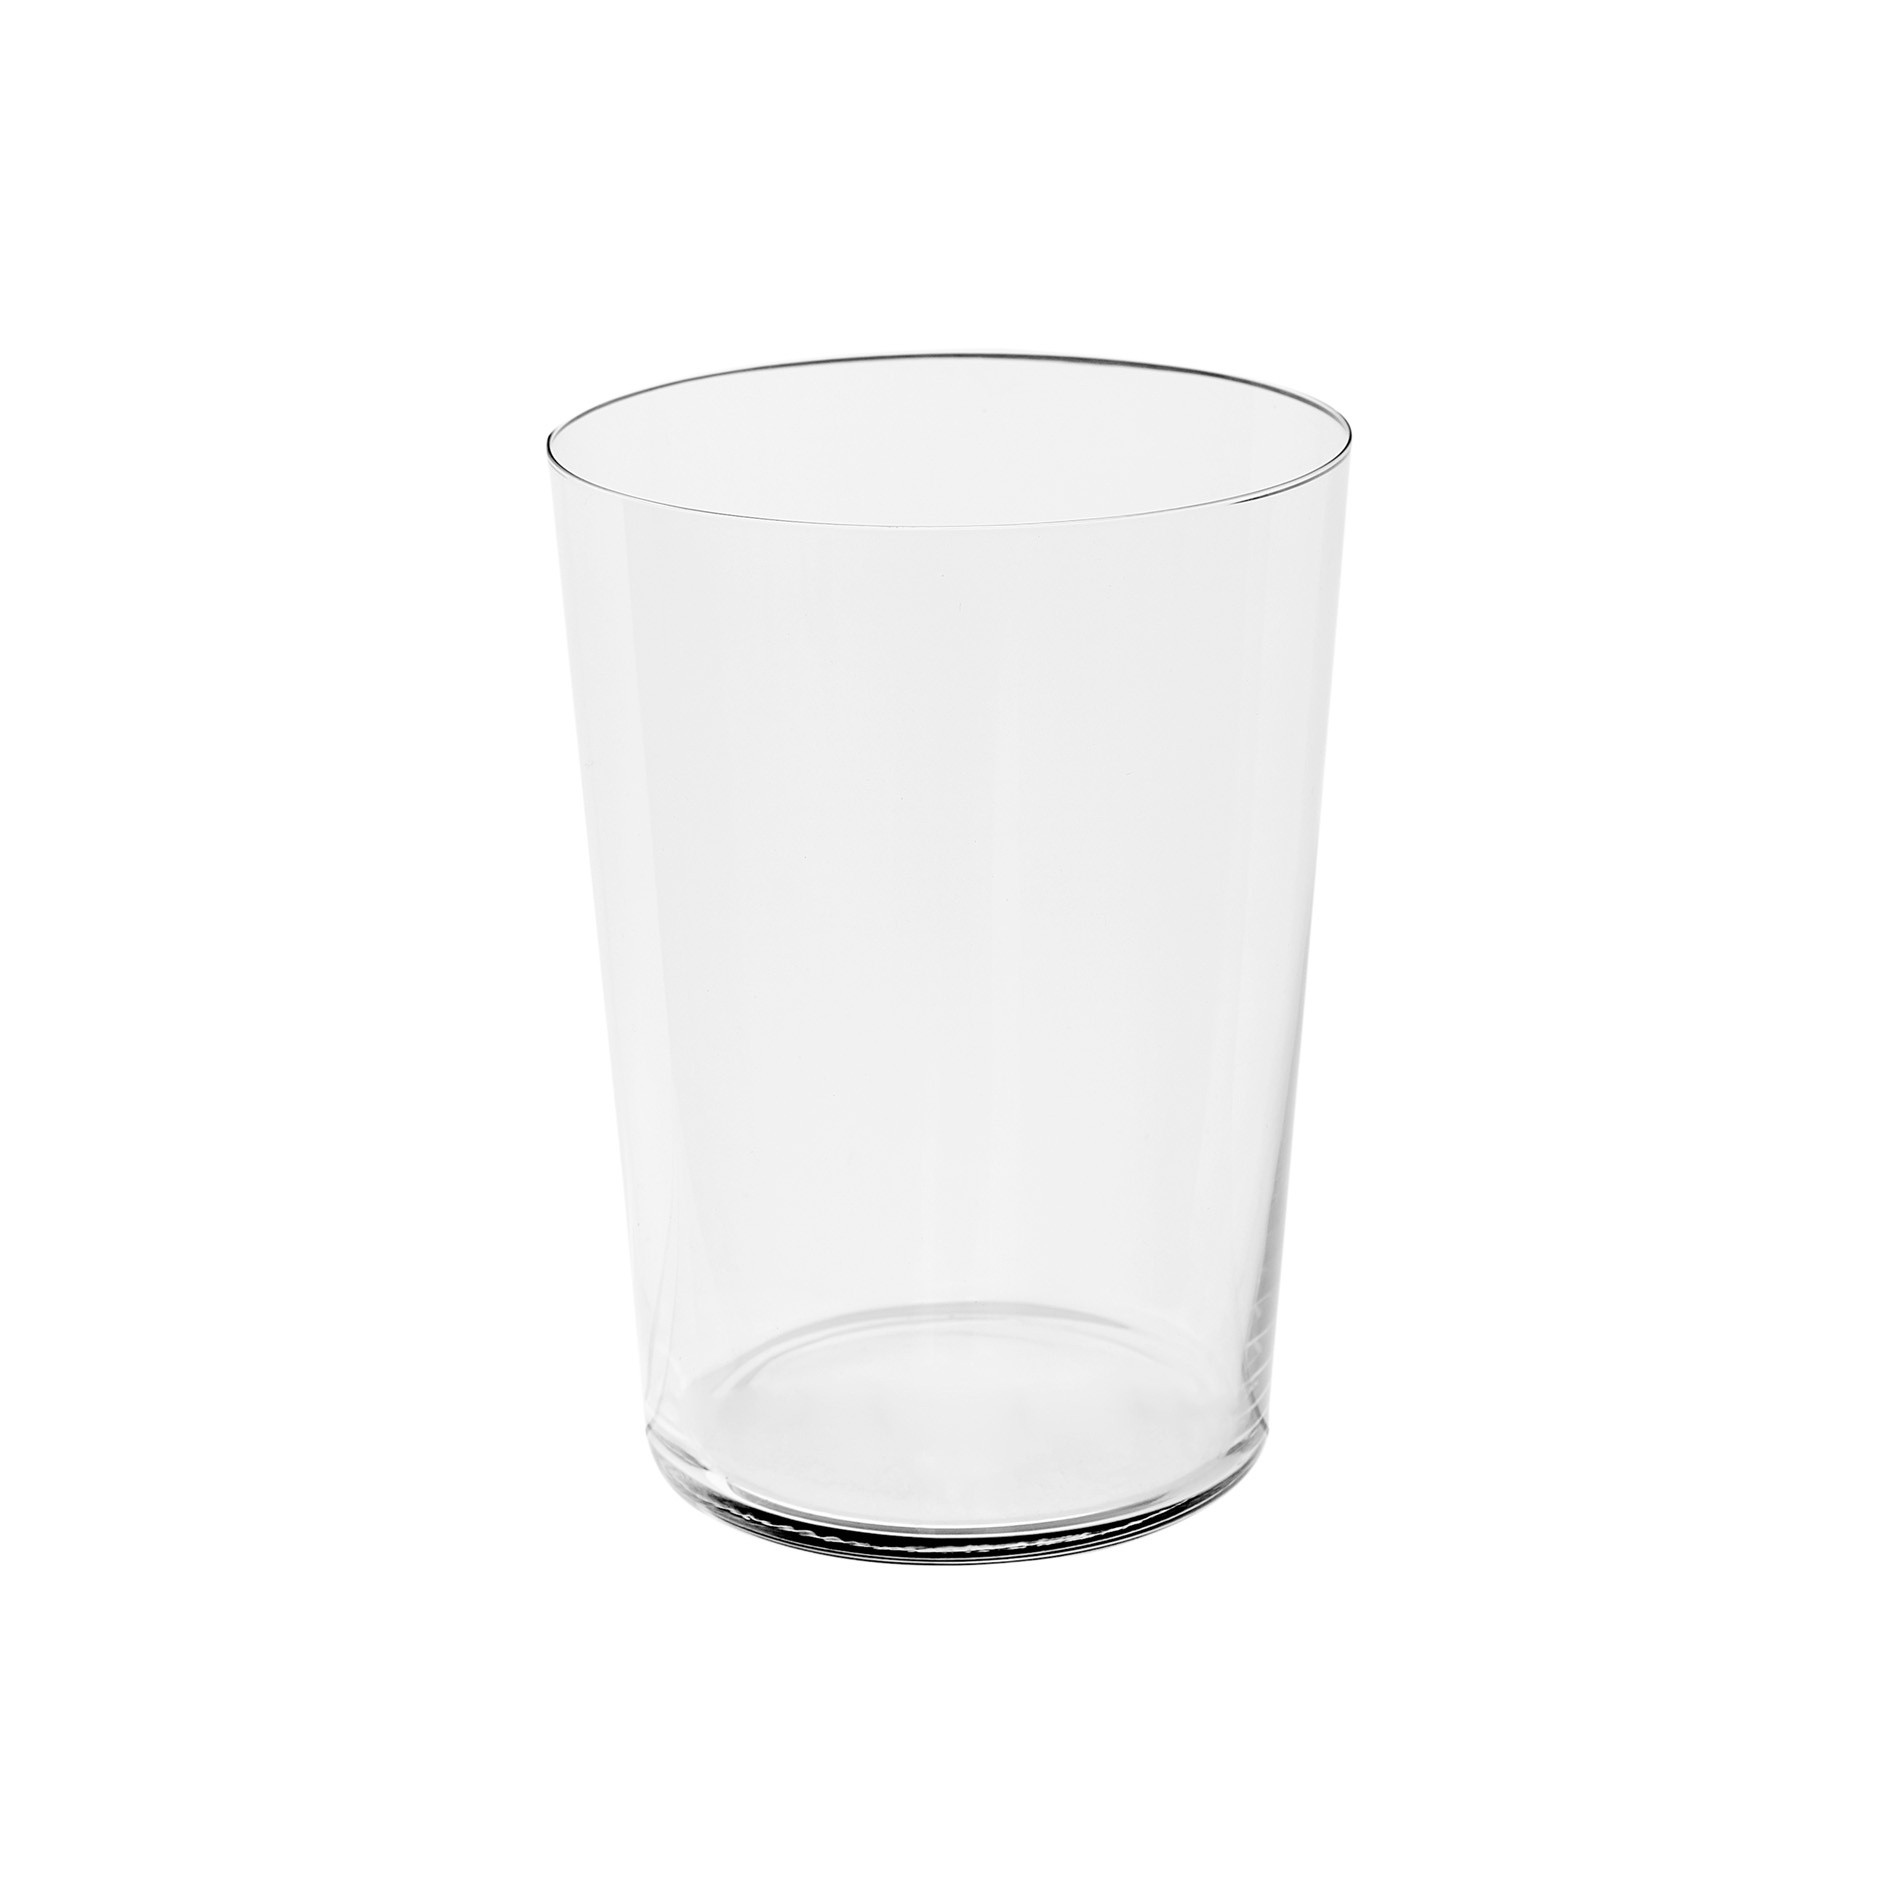 Set of 6 Starck drinking glasses, Transparent, large image number 1